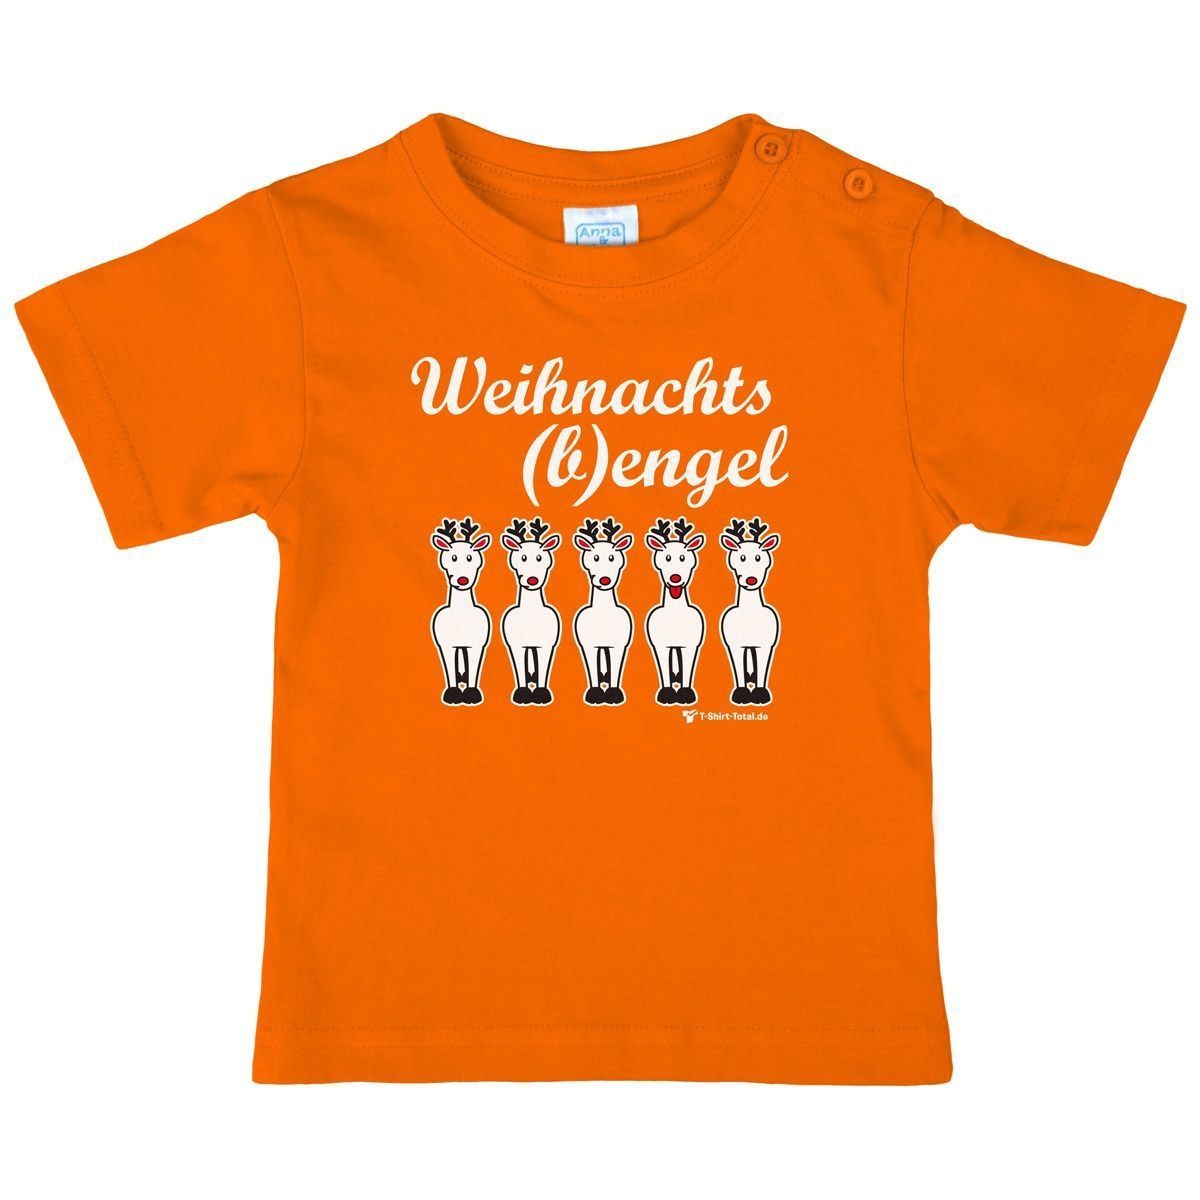 Weihnachtsbengel Kinder T-Shirt orange 104